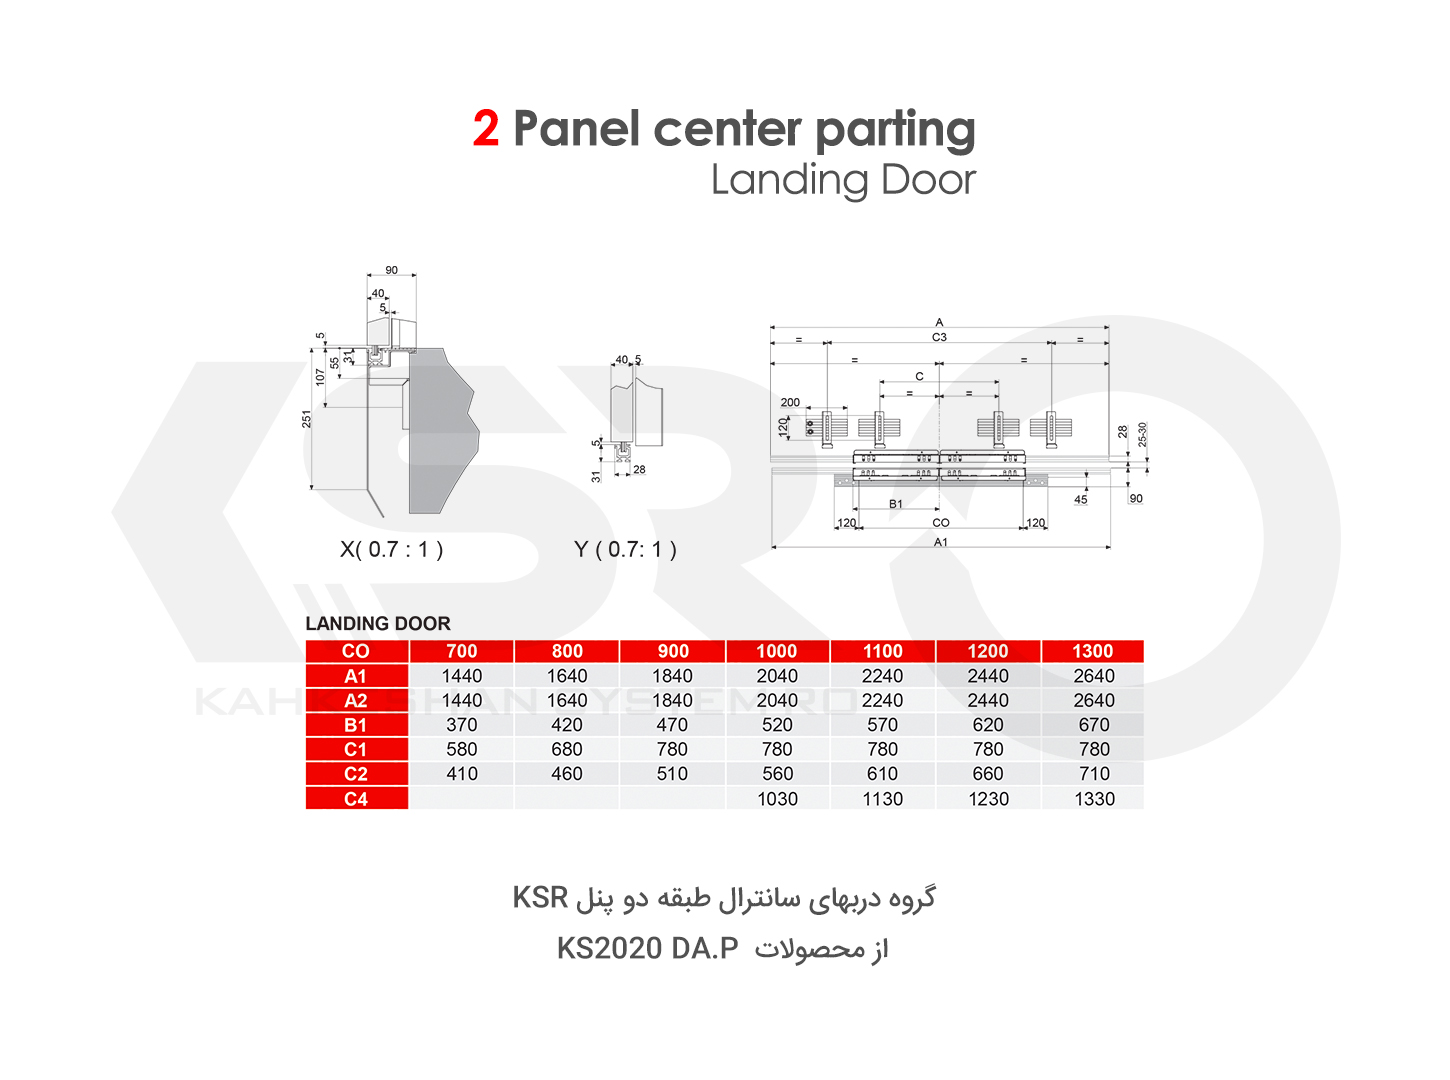 2 Panel center parting landing door cross